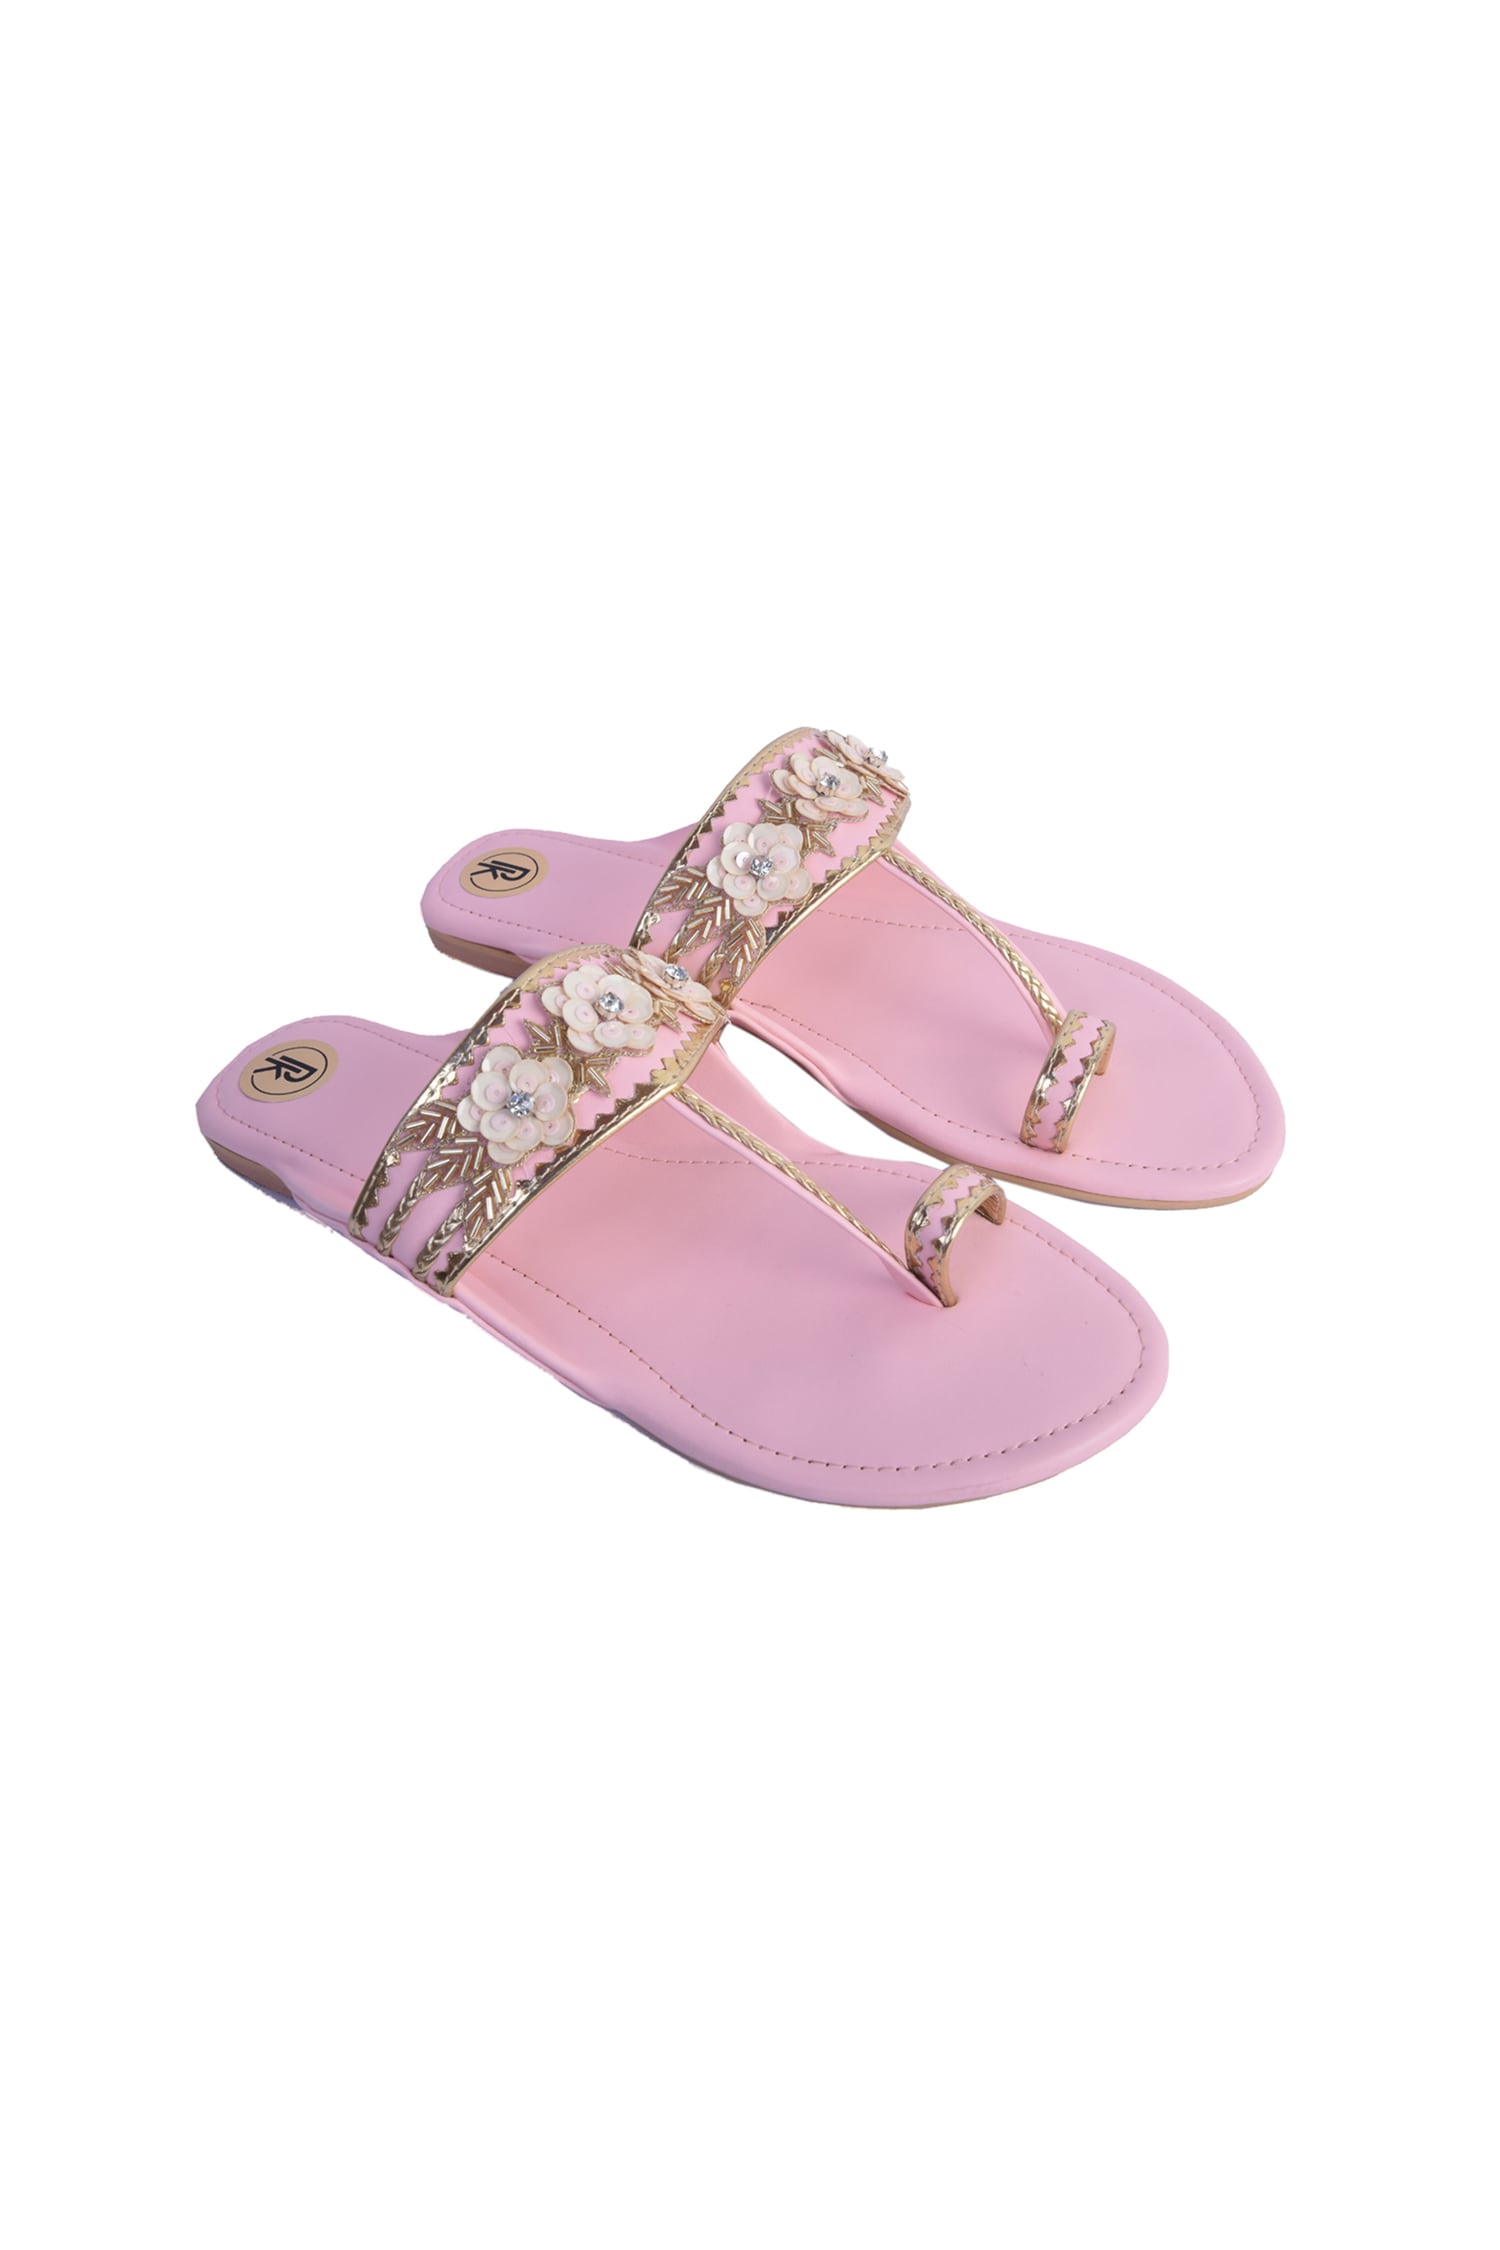 Summer Beach Little Girls Sandals Soft Bottom Diamond Beads Girl Princess  Shoes Kids Sandals Students Pink